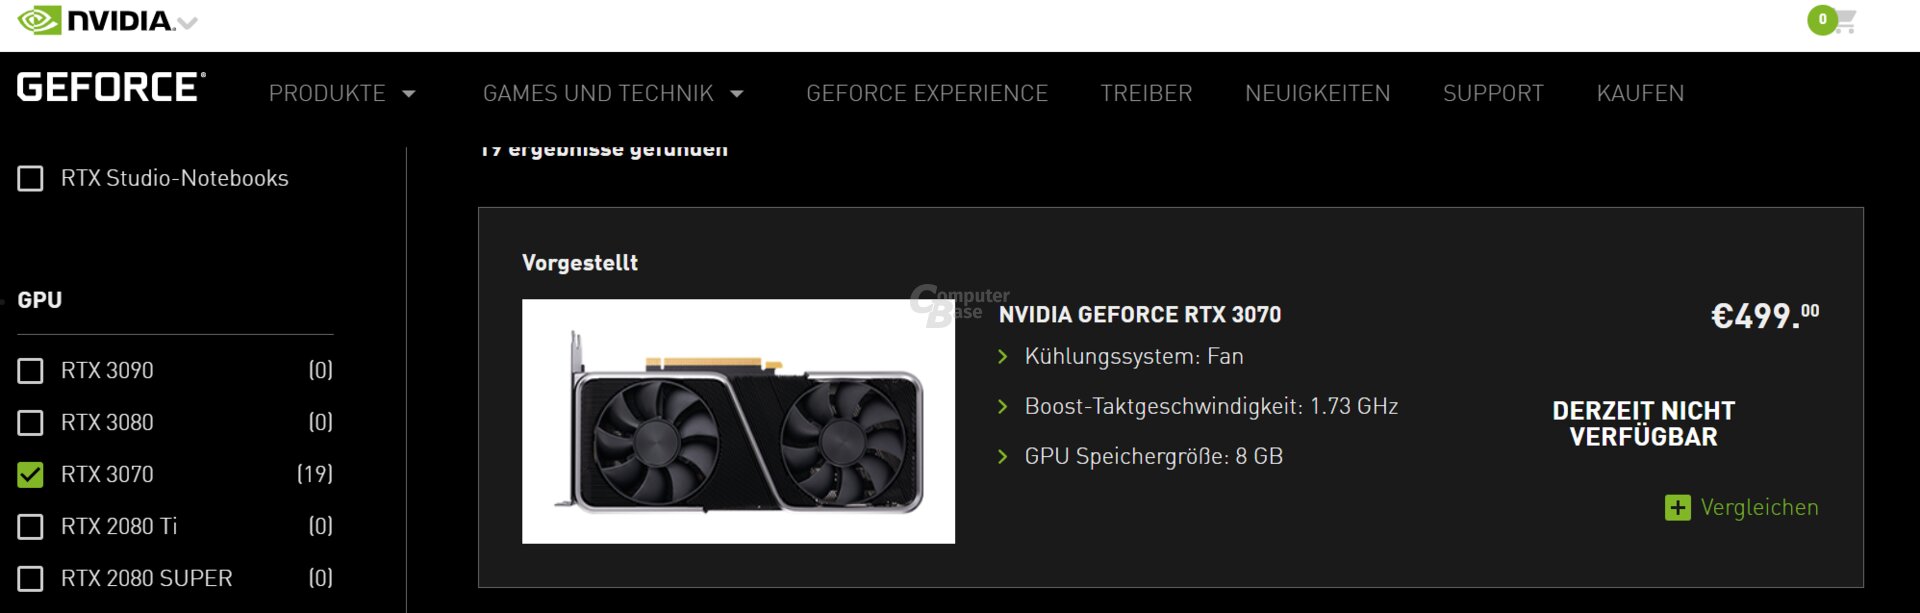 GeForce RTX 3070 nicht verfügbar